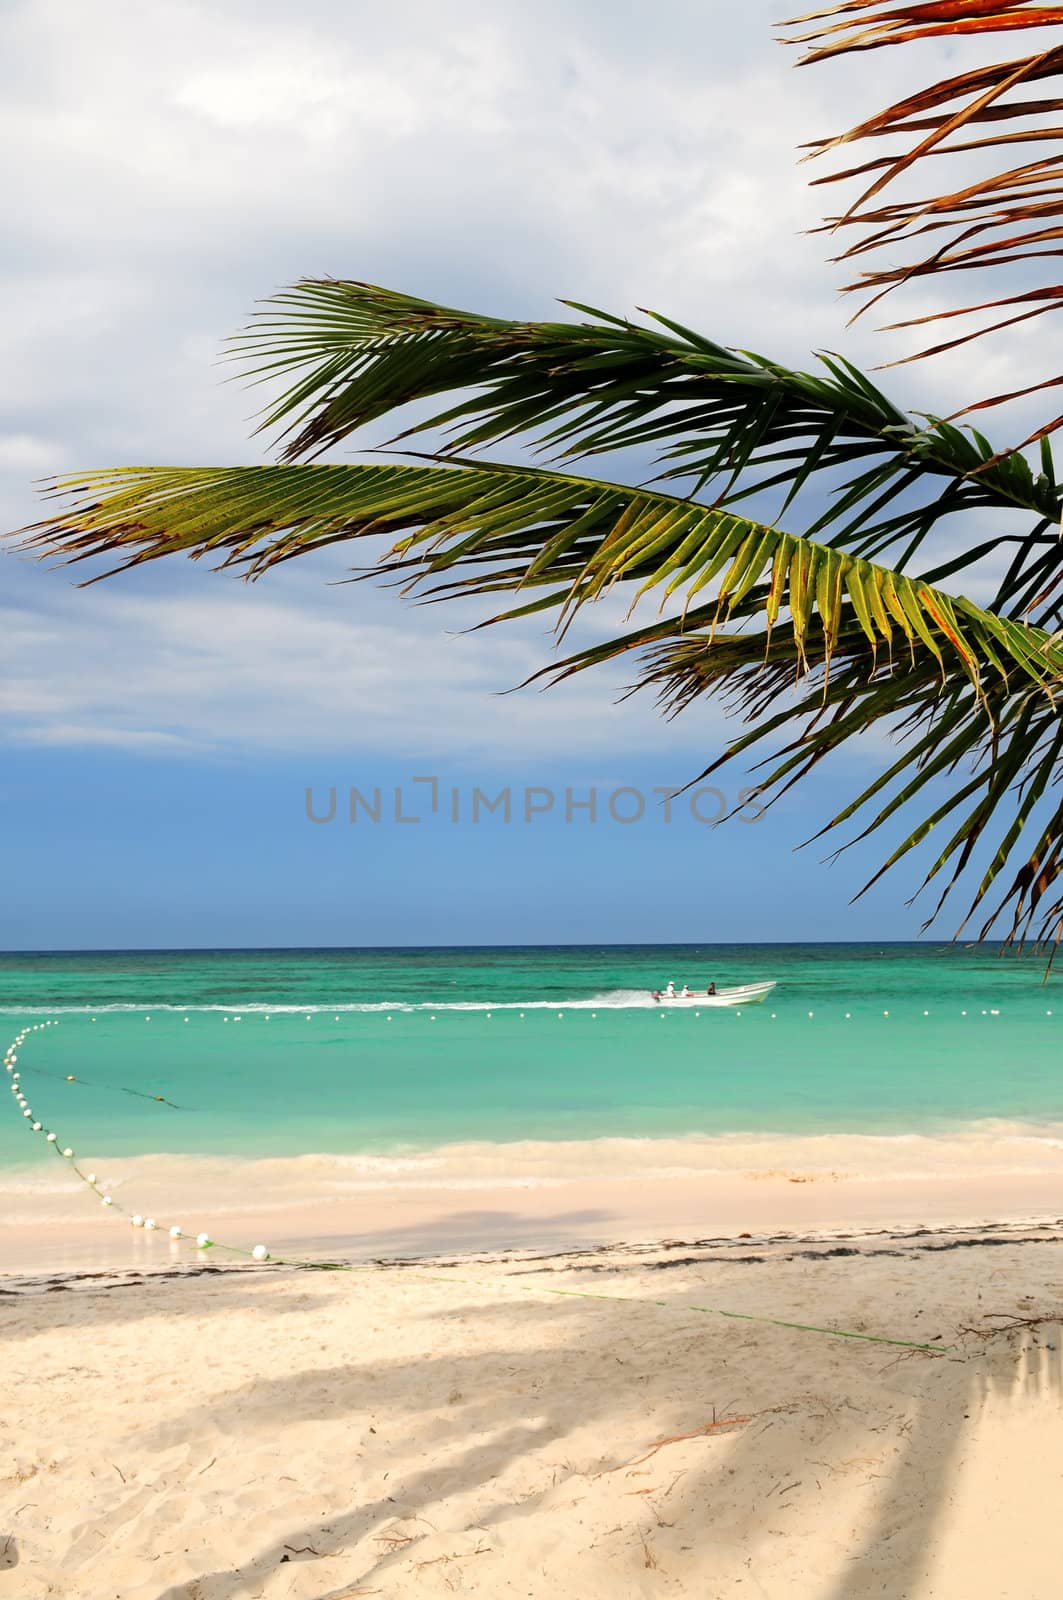 Tropical sandy beach of a Caribbean island